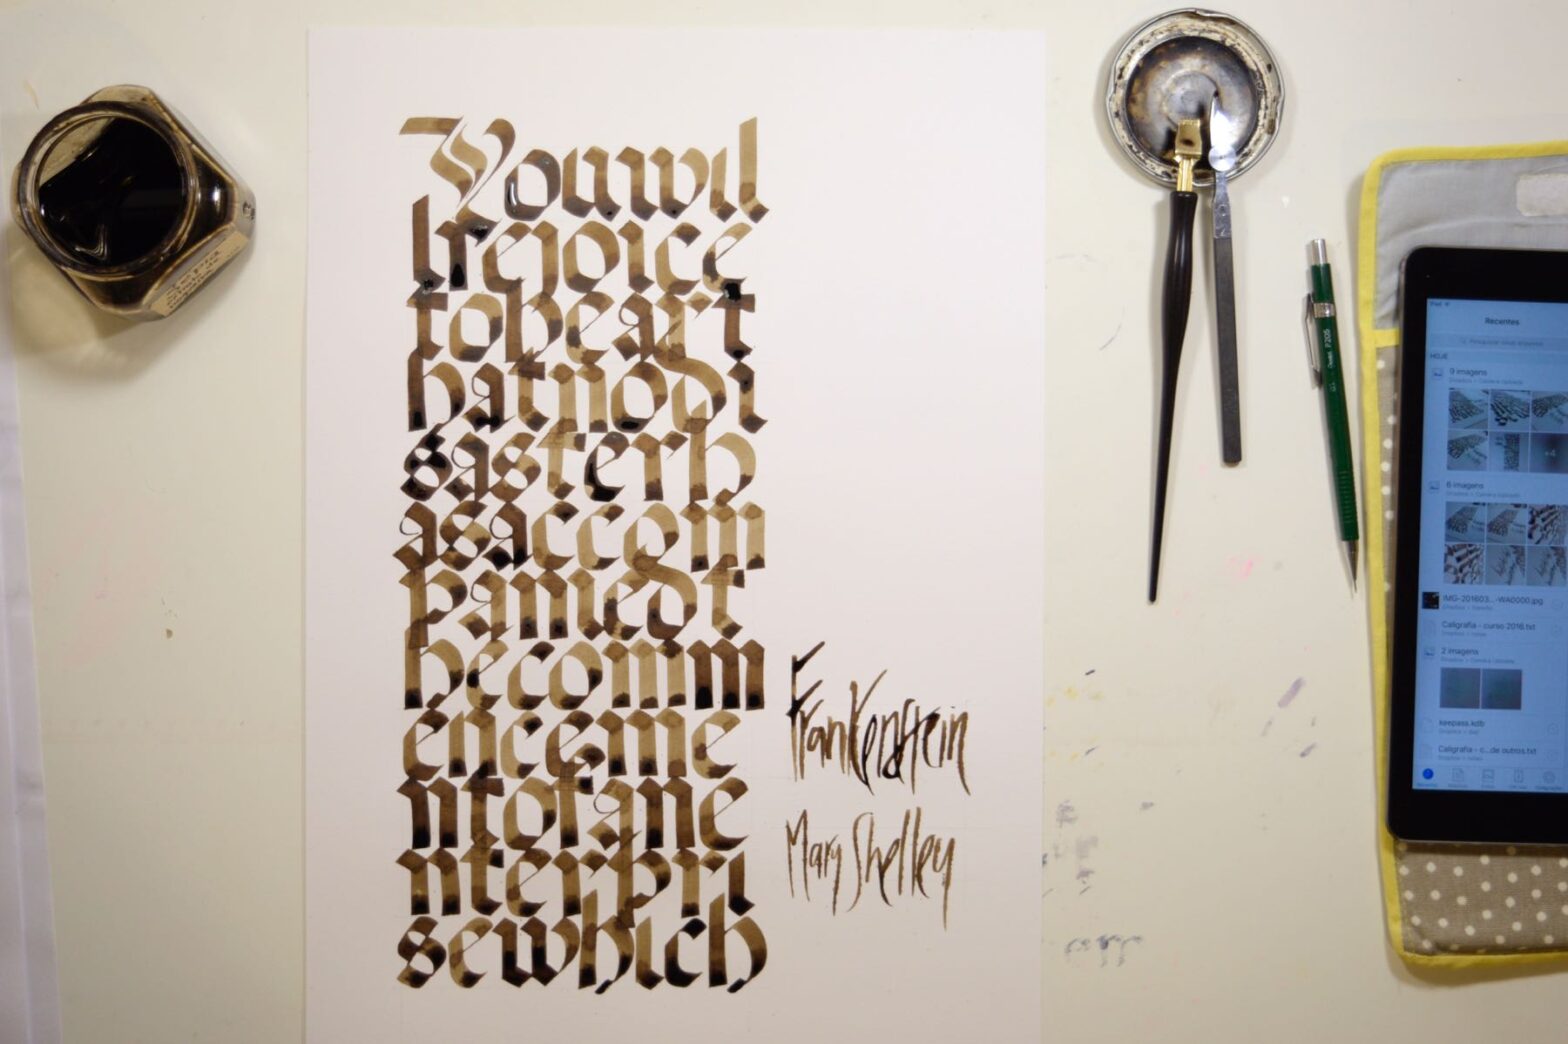 Trabalho de caligrafia em letras góticas fotografado com materiais de caligrafia